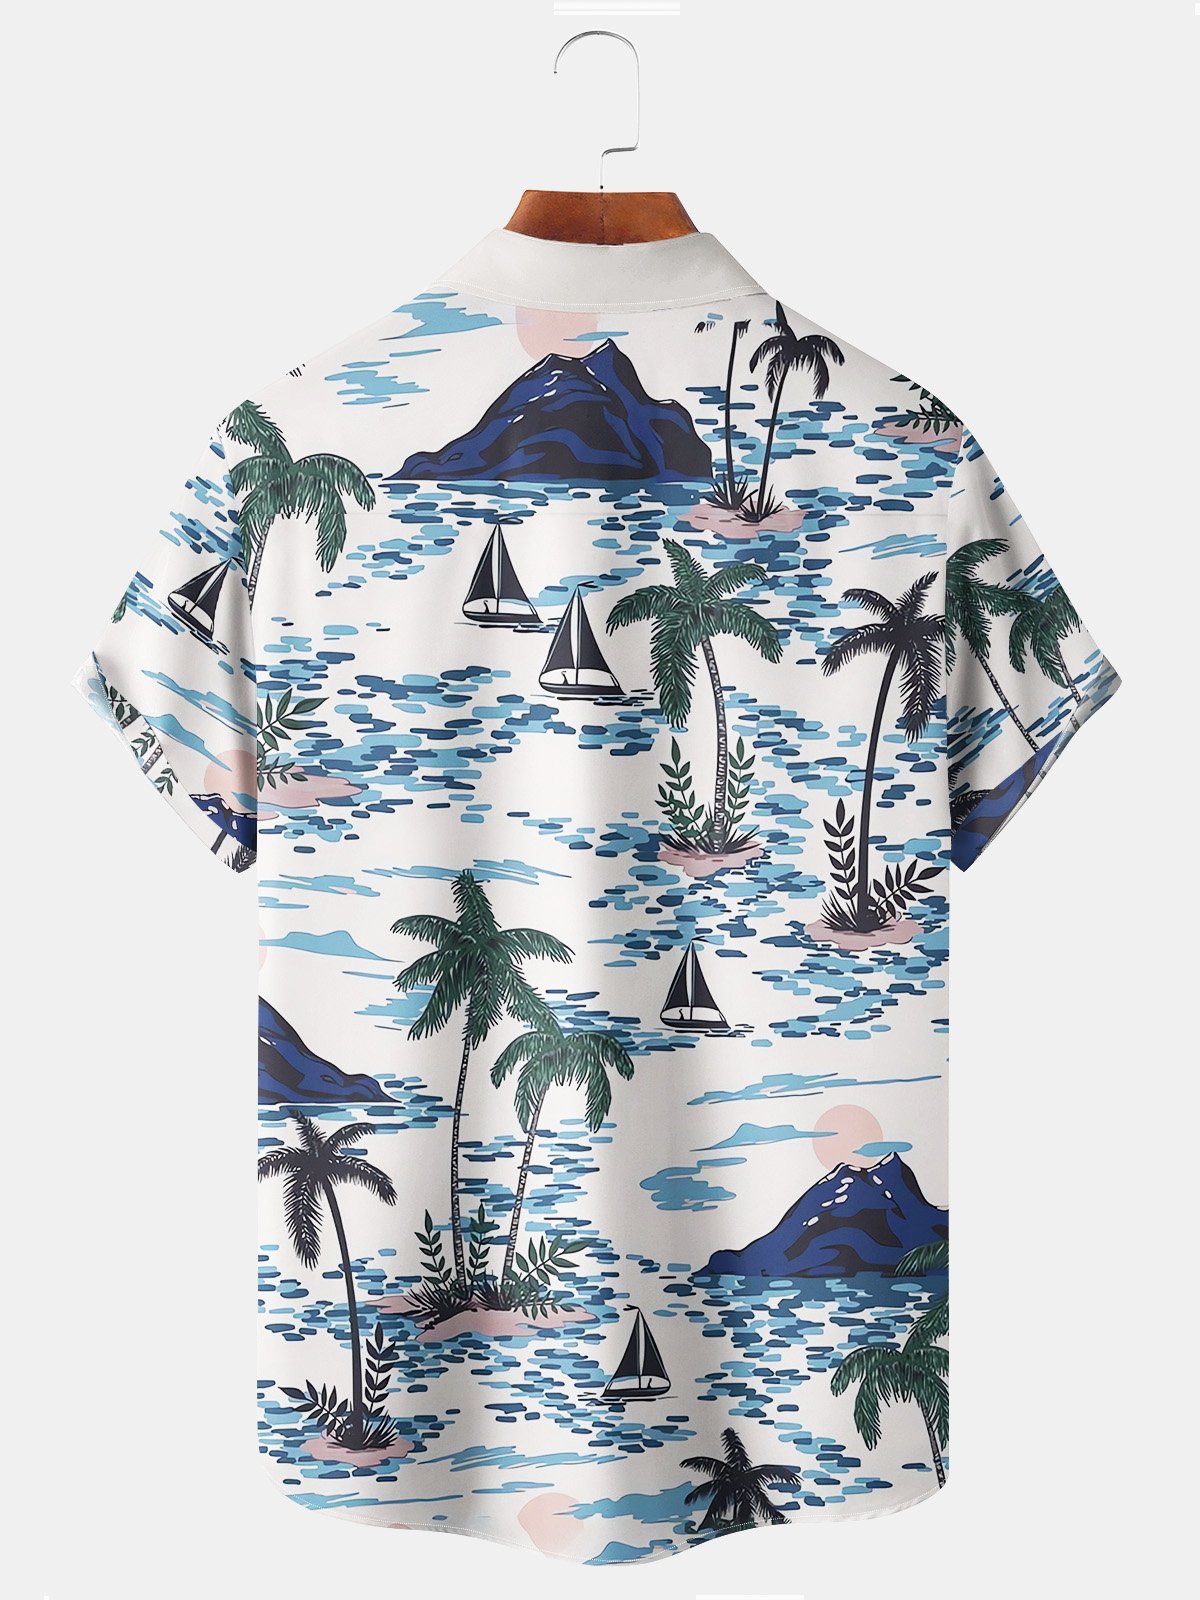 Royaura Beach Vacation Men's White Hawaiian Shirts Coconut Tree Art Stretch Plus Size Aloha Casual Camp Pocket Shirts